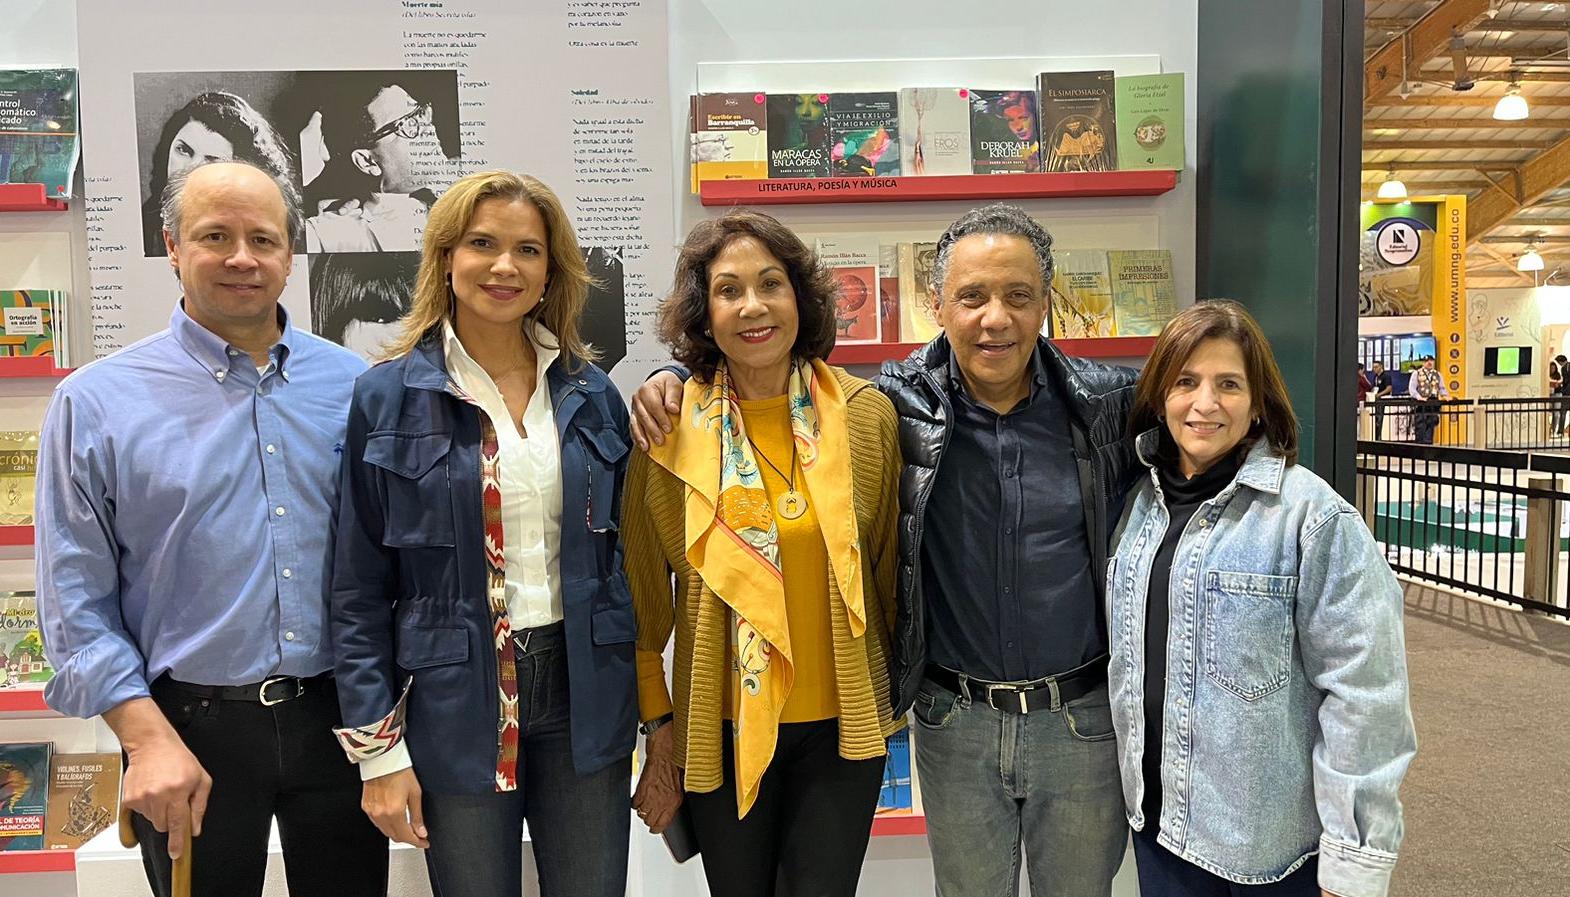 Francisco Lloreda, María Teresa Egurrola, Lola De La Cruz, Alonso Sánchez Baute y María Margarita Carbonell de Meisel.